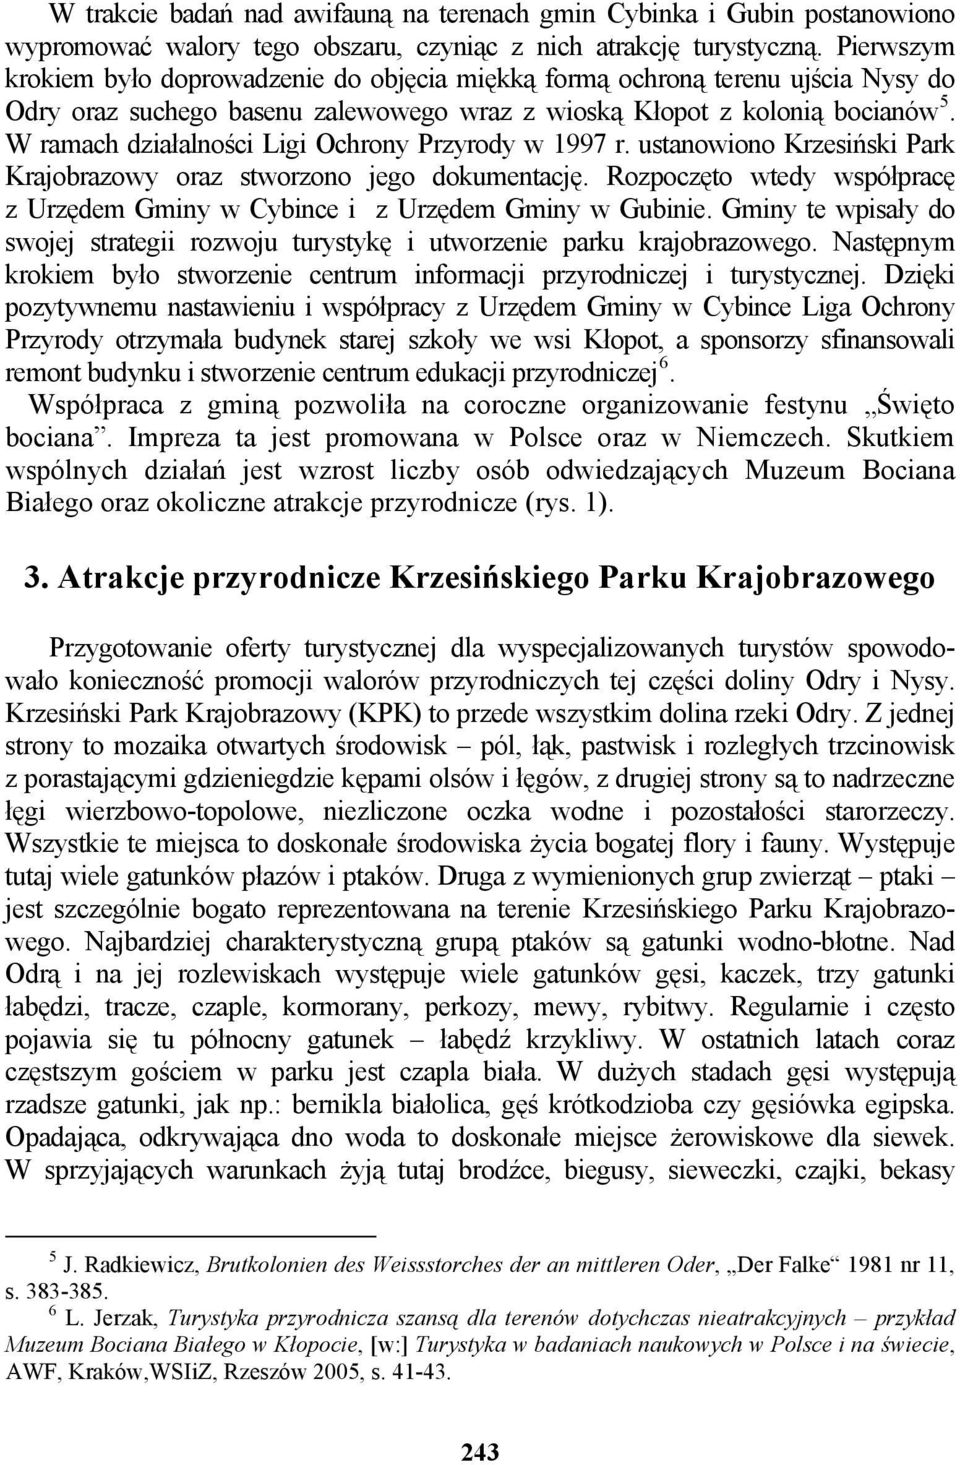 W ramach działalności Ligi Ochrony Przyrody w 1997 r. ustanowiono Krzesiński Park Krajobrazowy oraz stworzono jego dokumentację.